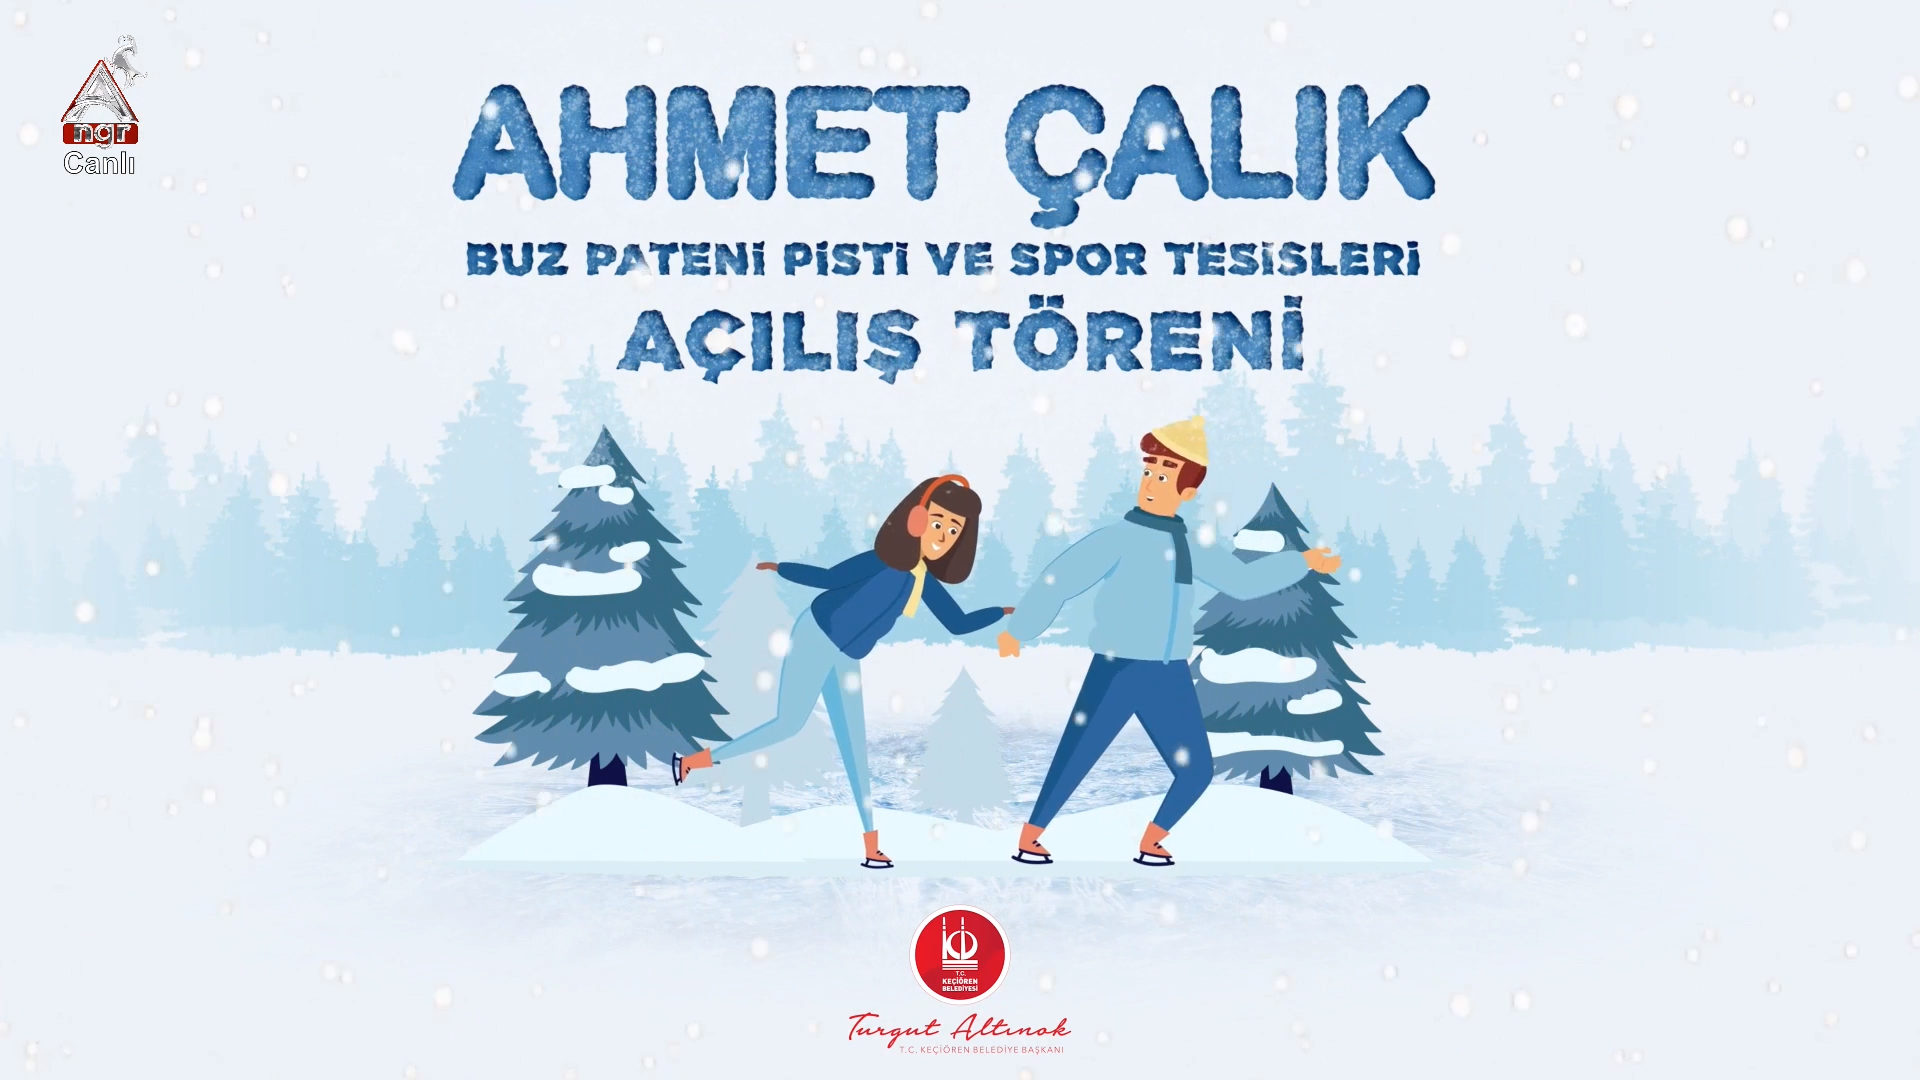 Ahmet ÇALIK Buz Pateni Pisti ve Spor Tesisleri Açılış Programı